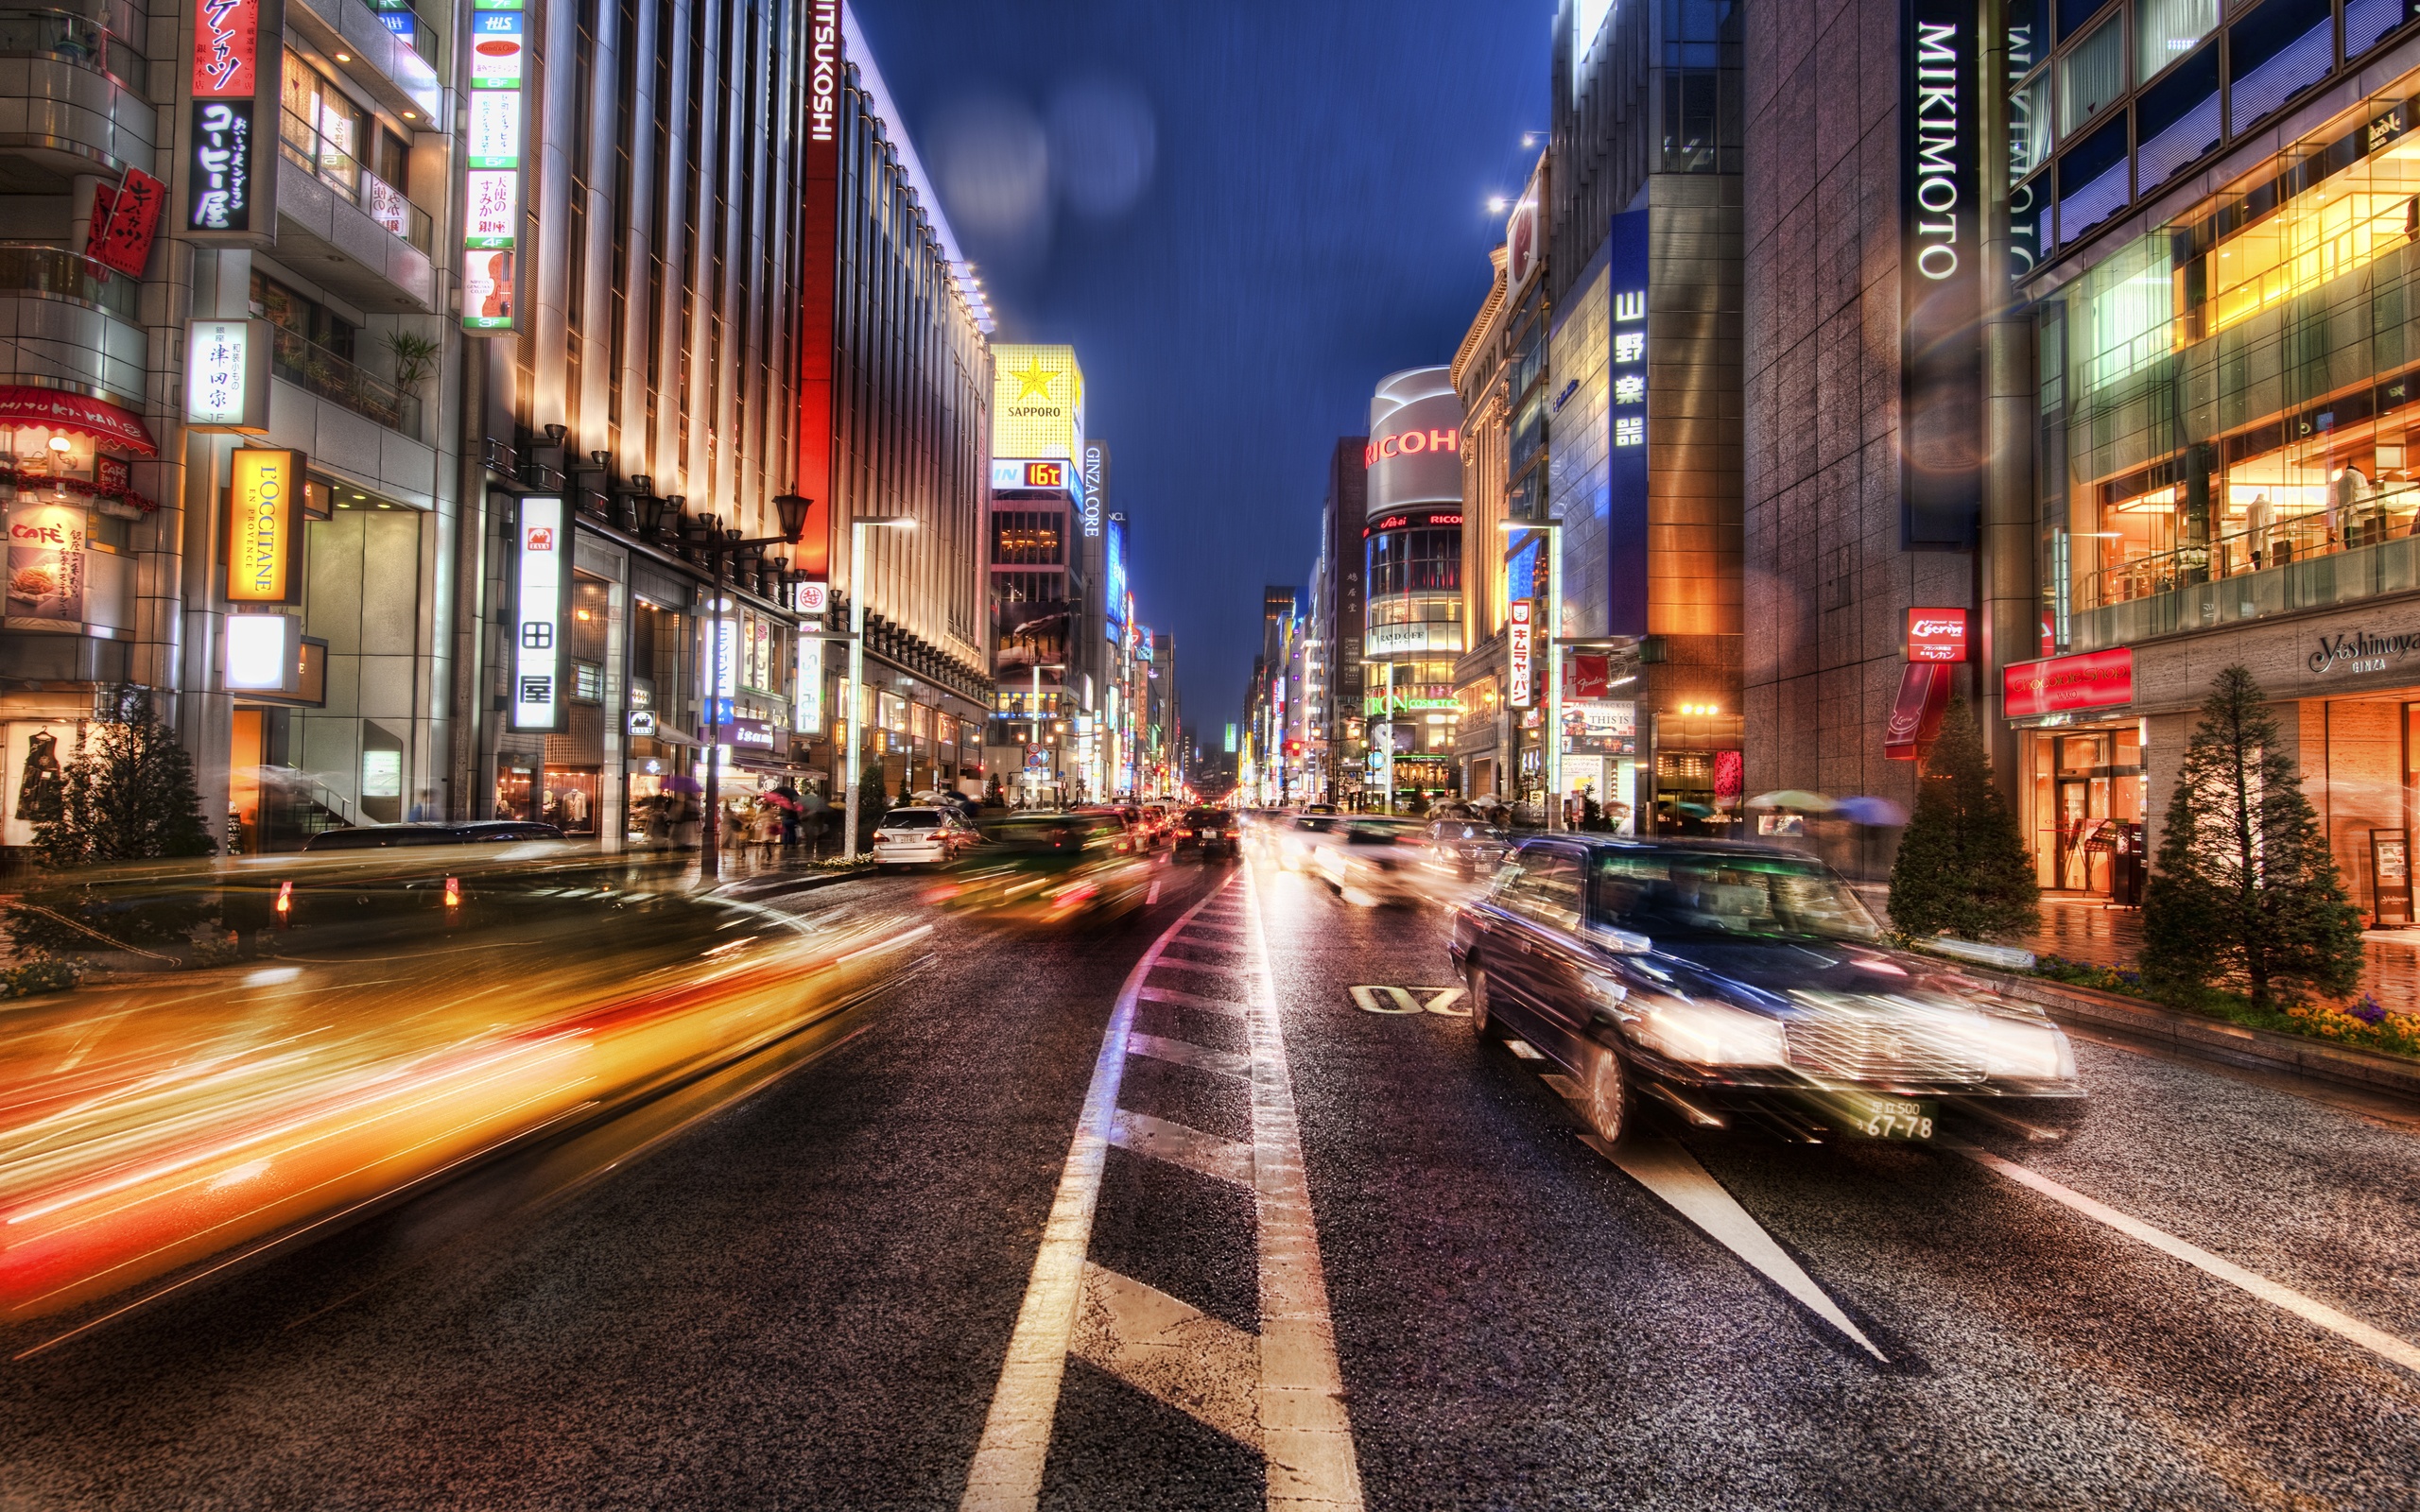 Dotonbori Shopping Street In Osaka Japan Stock Photo - Download Image Now - iStock